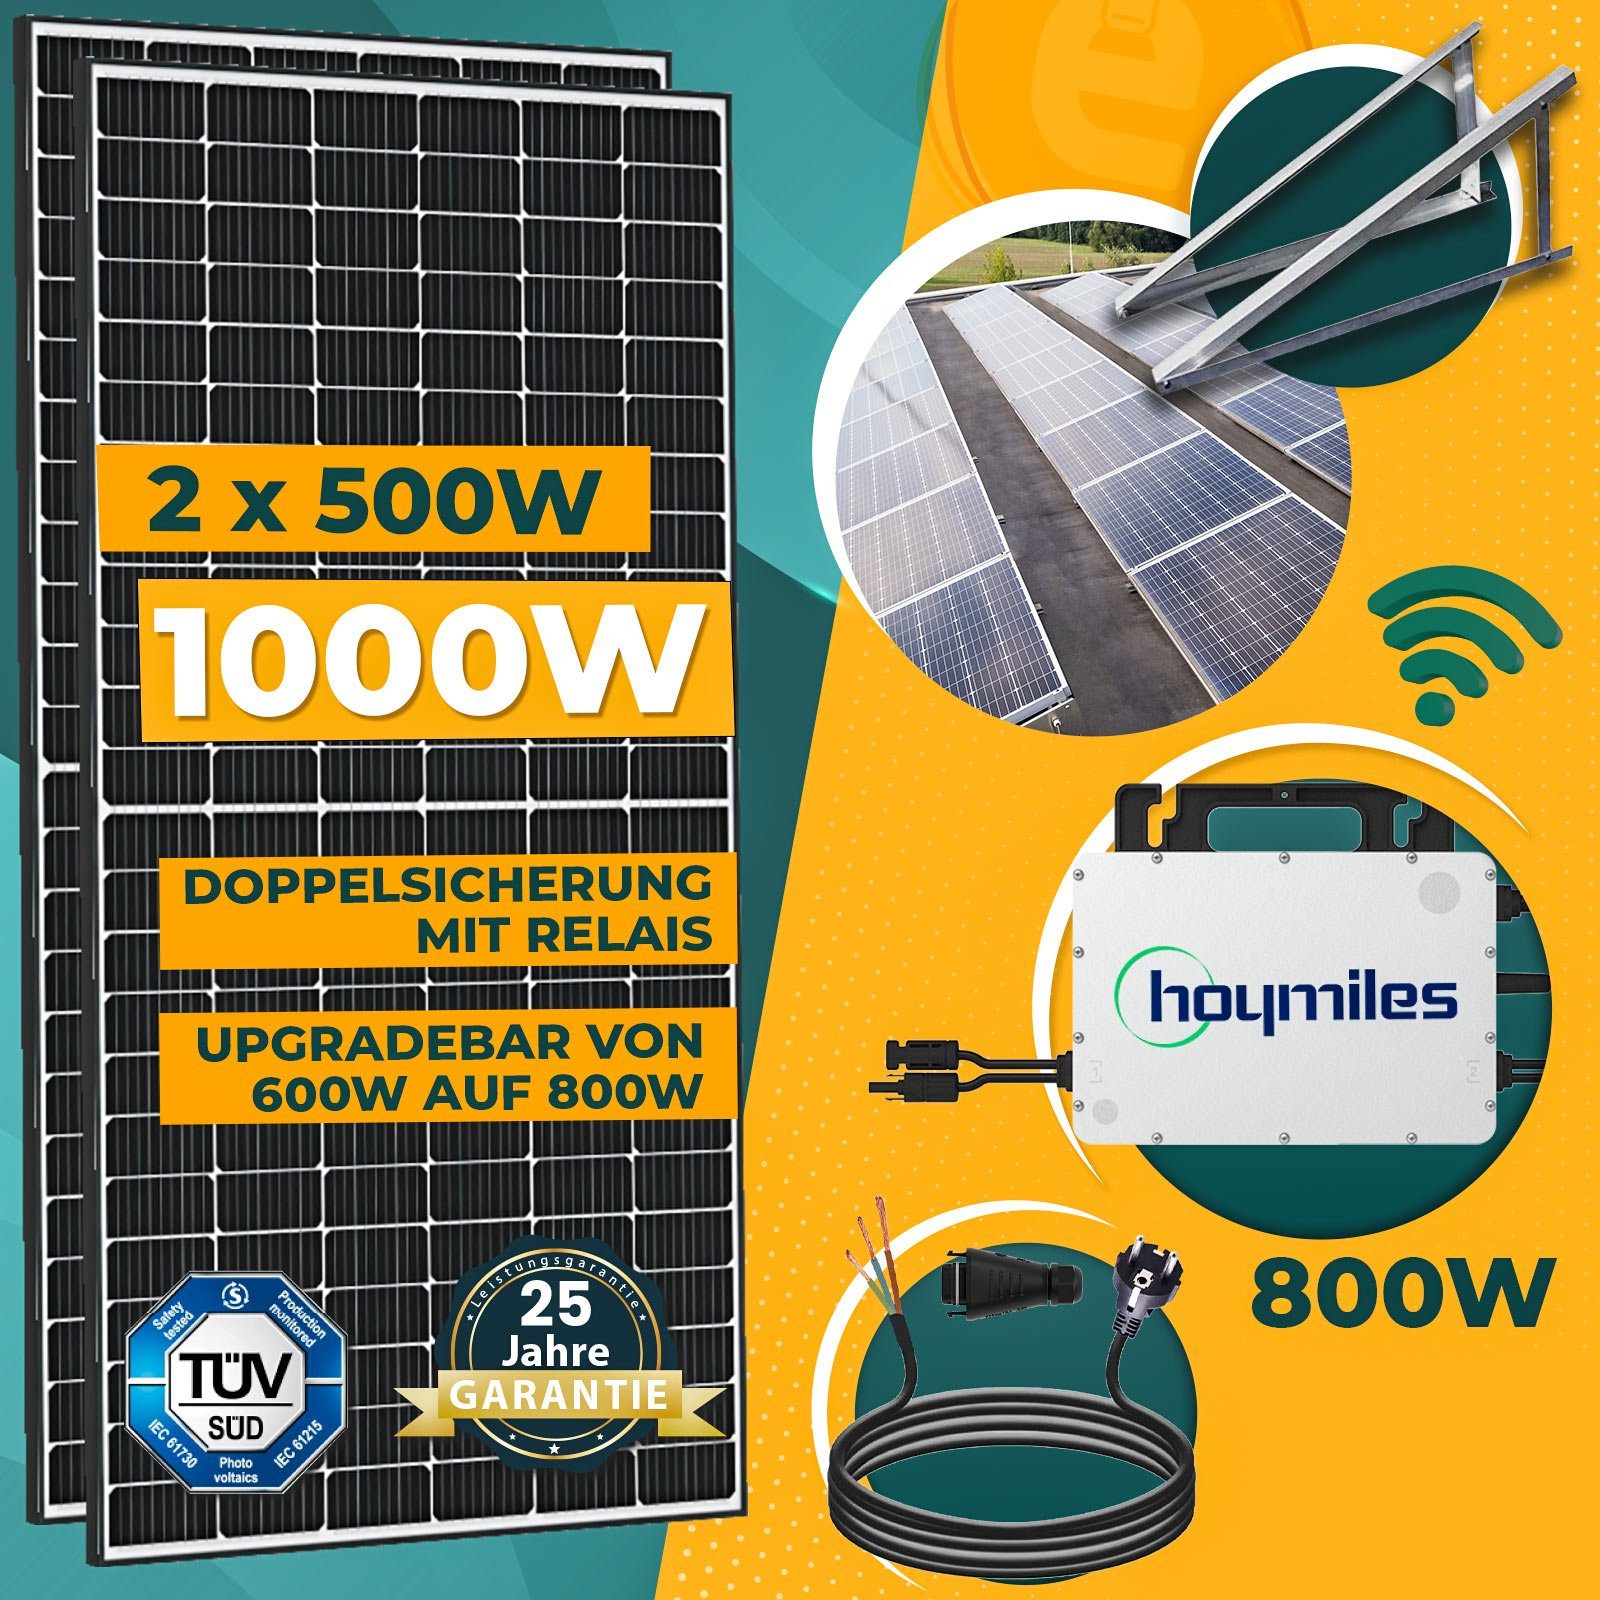 2000W Photovoltaik Balkonkraftwerk inkl. 500W Solarmodule, Hoymiles  HMS-1600-4T Wechselrichter  2000W Photovoltaik Balkonkraftwerk inkl. 500W  Solarmodule, Hoymiles HMS-1600-4T Wechselrichter, DTU-WLite-S, 10M  Wielandstecker und Balkongeländer Eckig PV